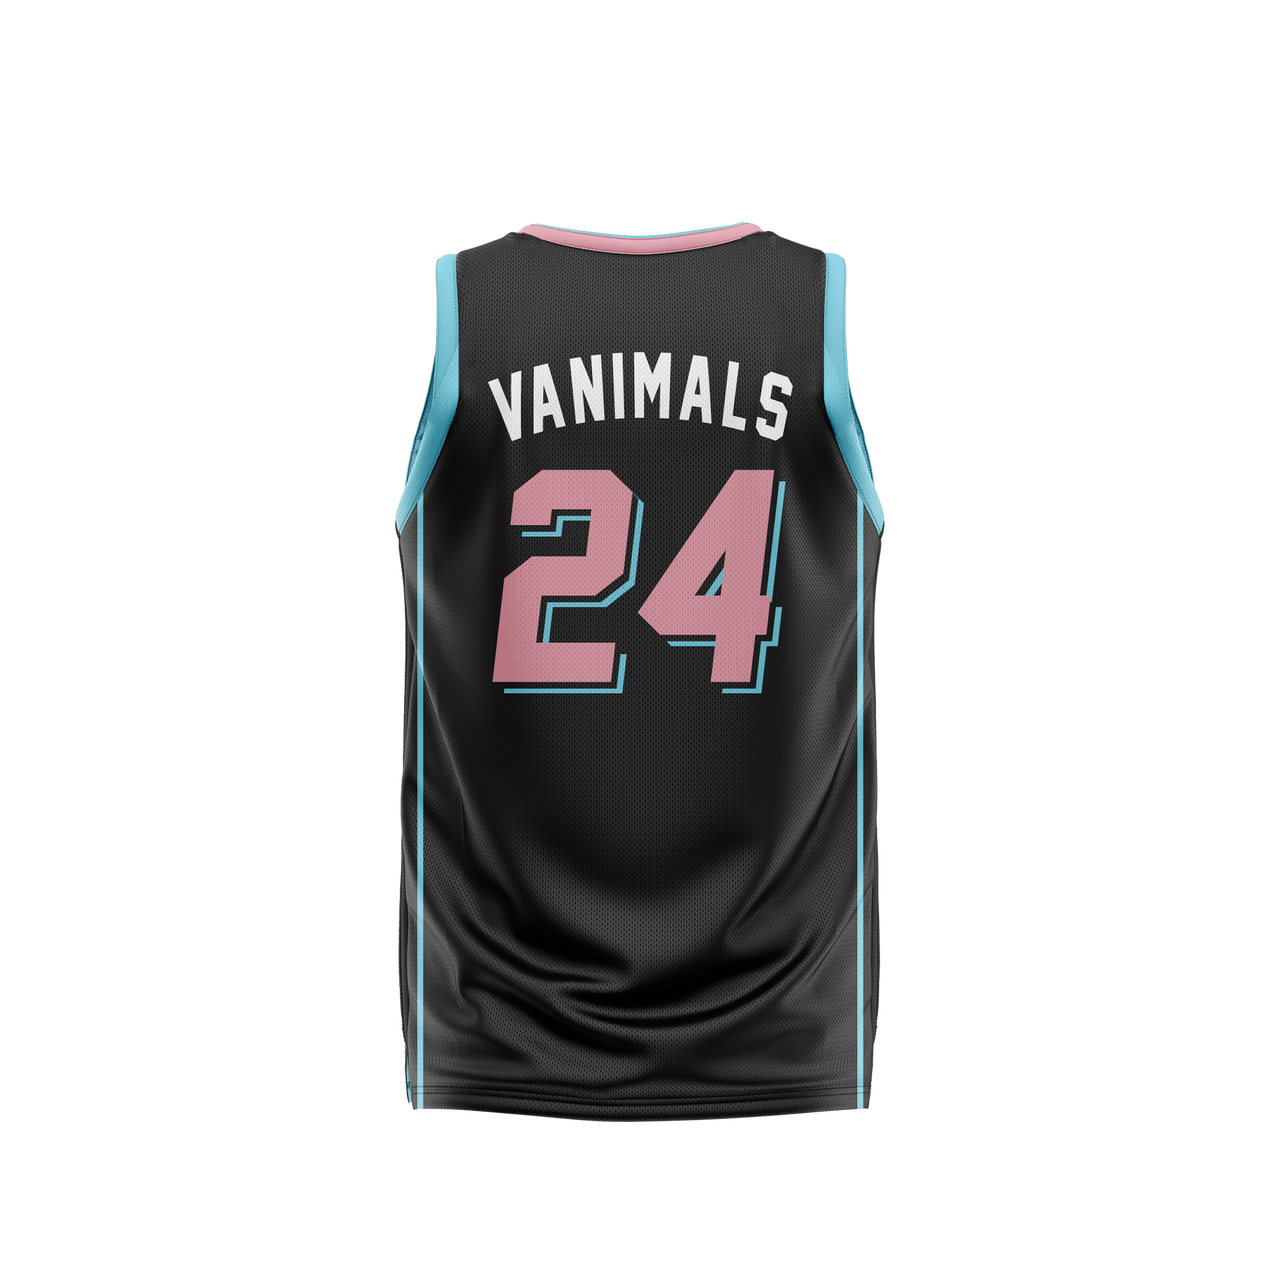 Vanimals NBA Style Singlet